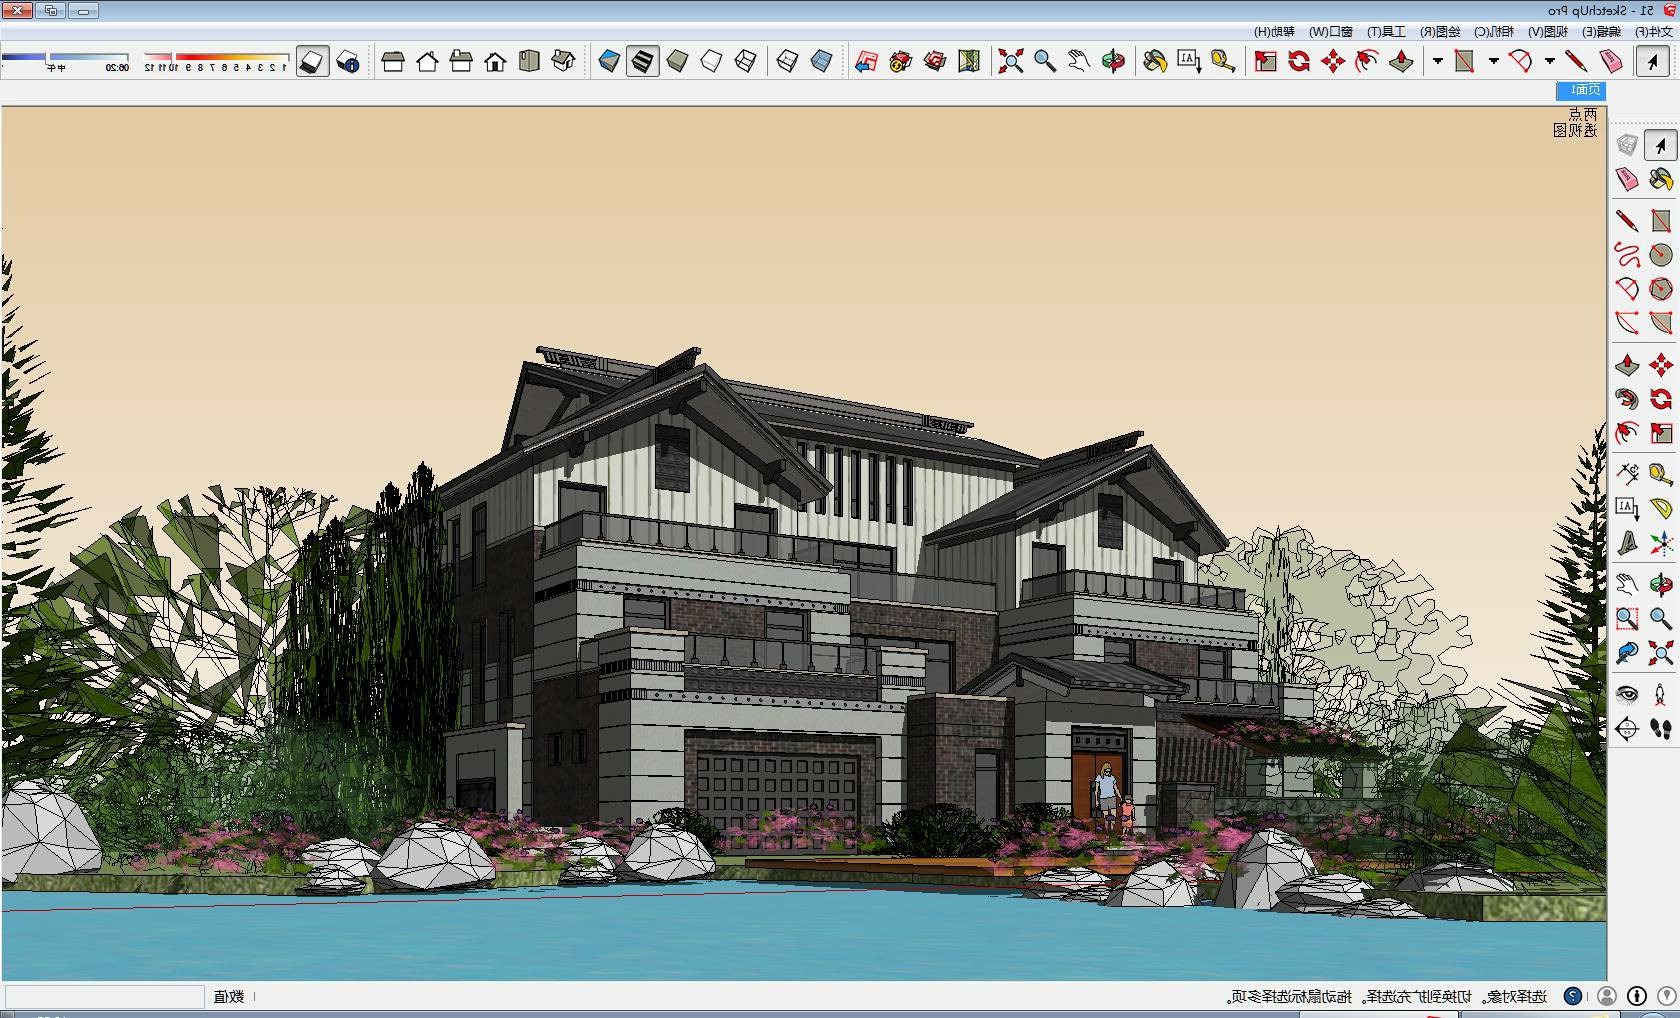 新中式 独栋别墅sketchup模型下载-编号371272 SketchUp建筑模型下载 第1张